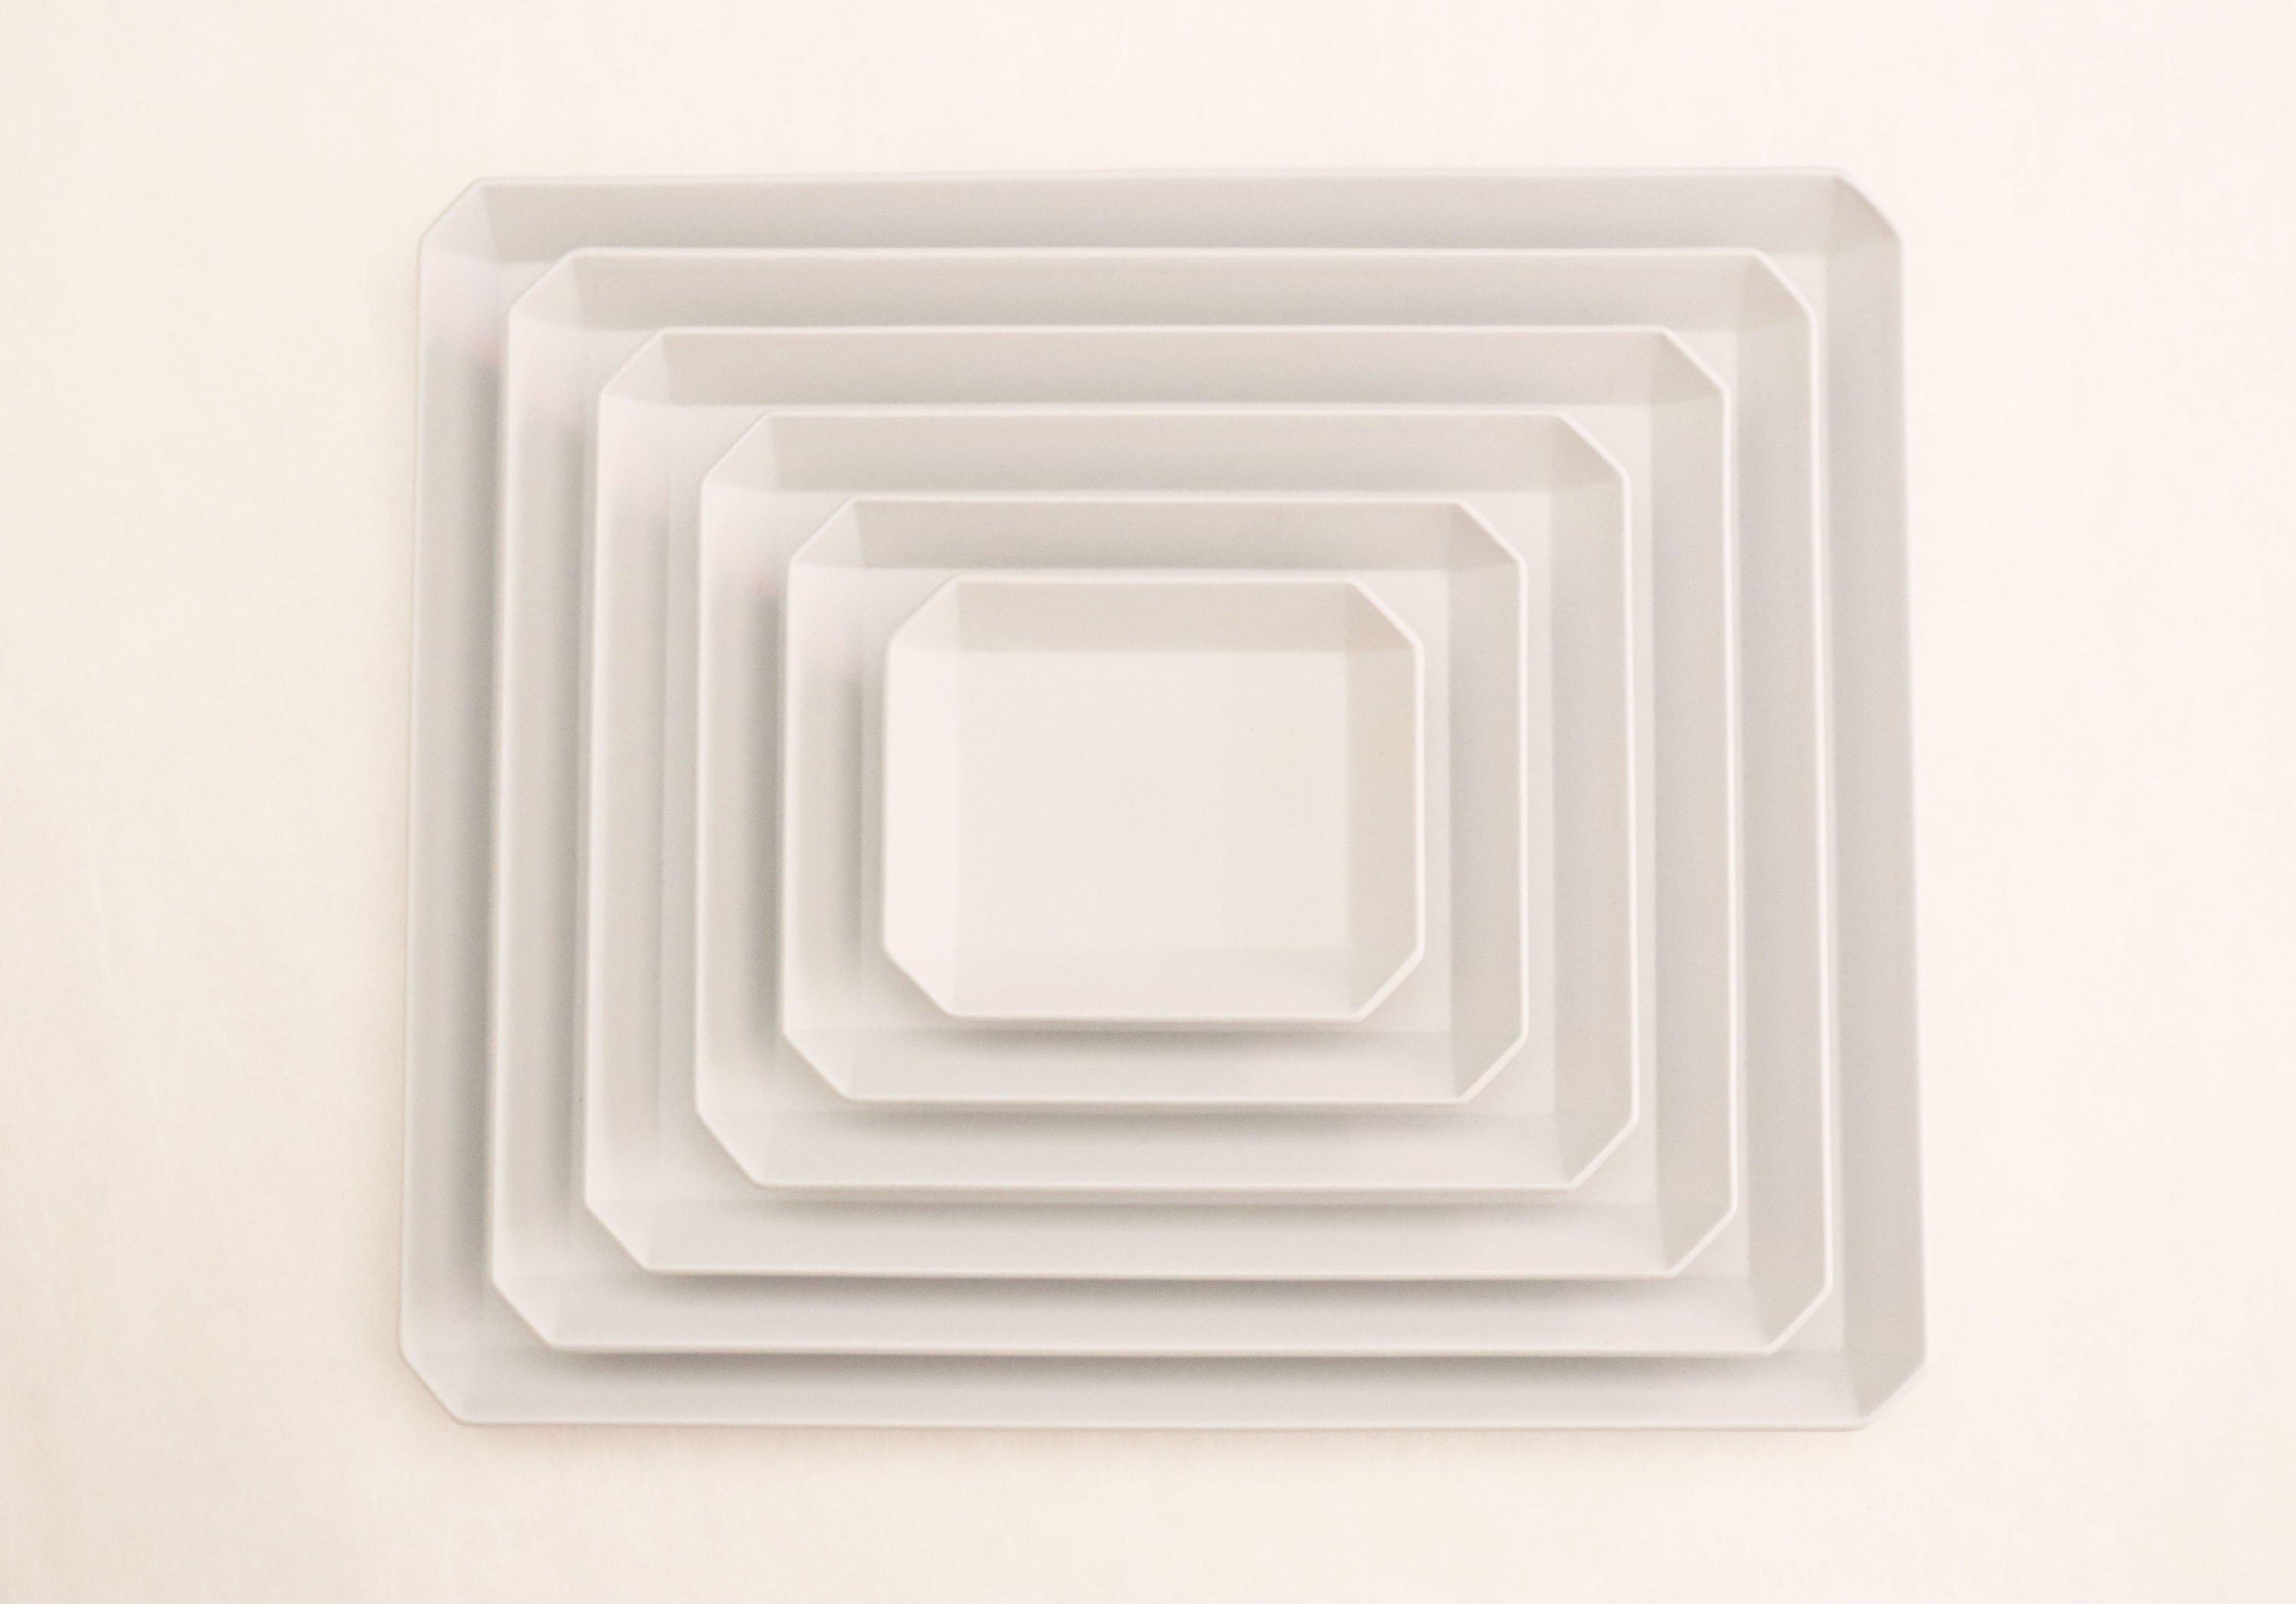 TY"Standard" Square Plate plain Gray 235-1616 / arita japan-YUGEN ONLINE STORE